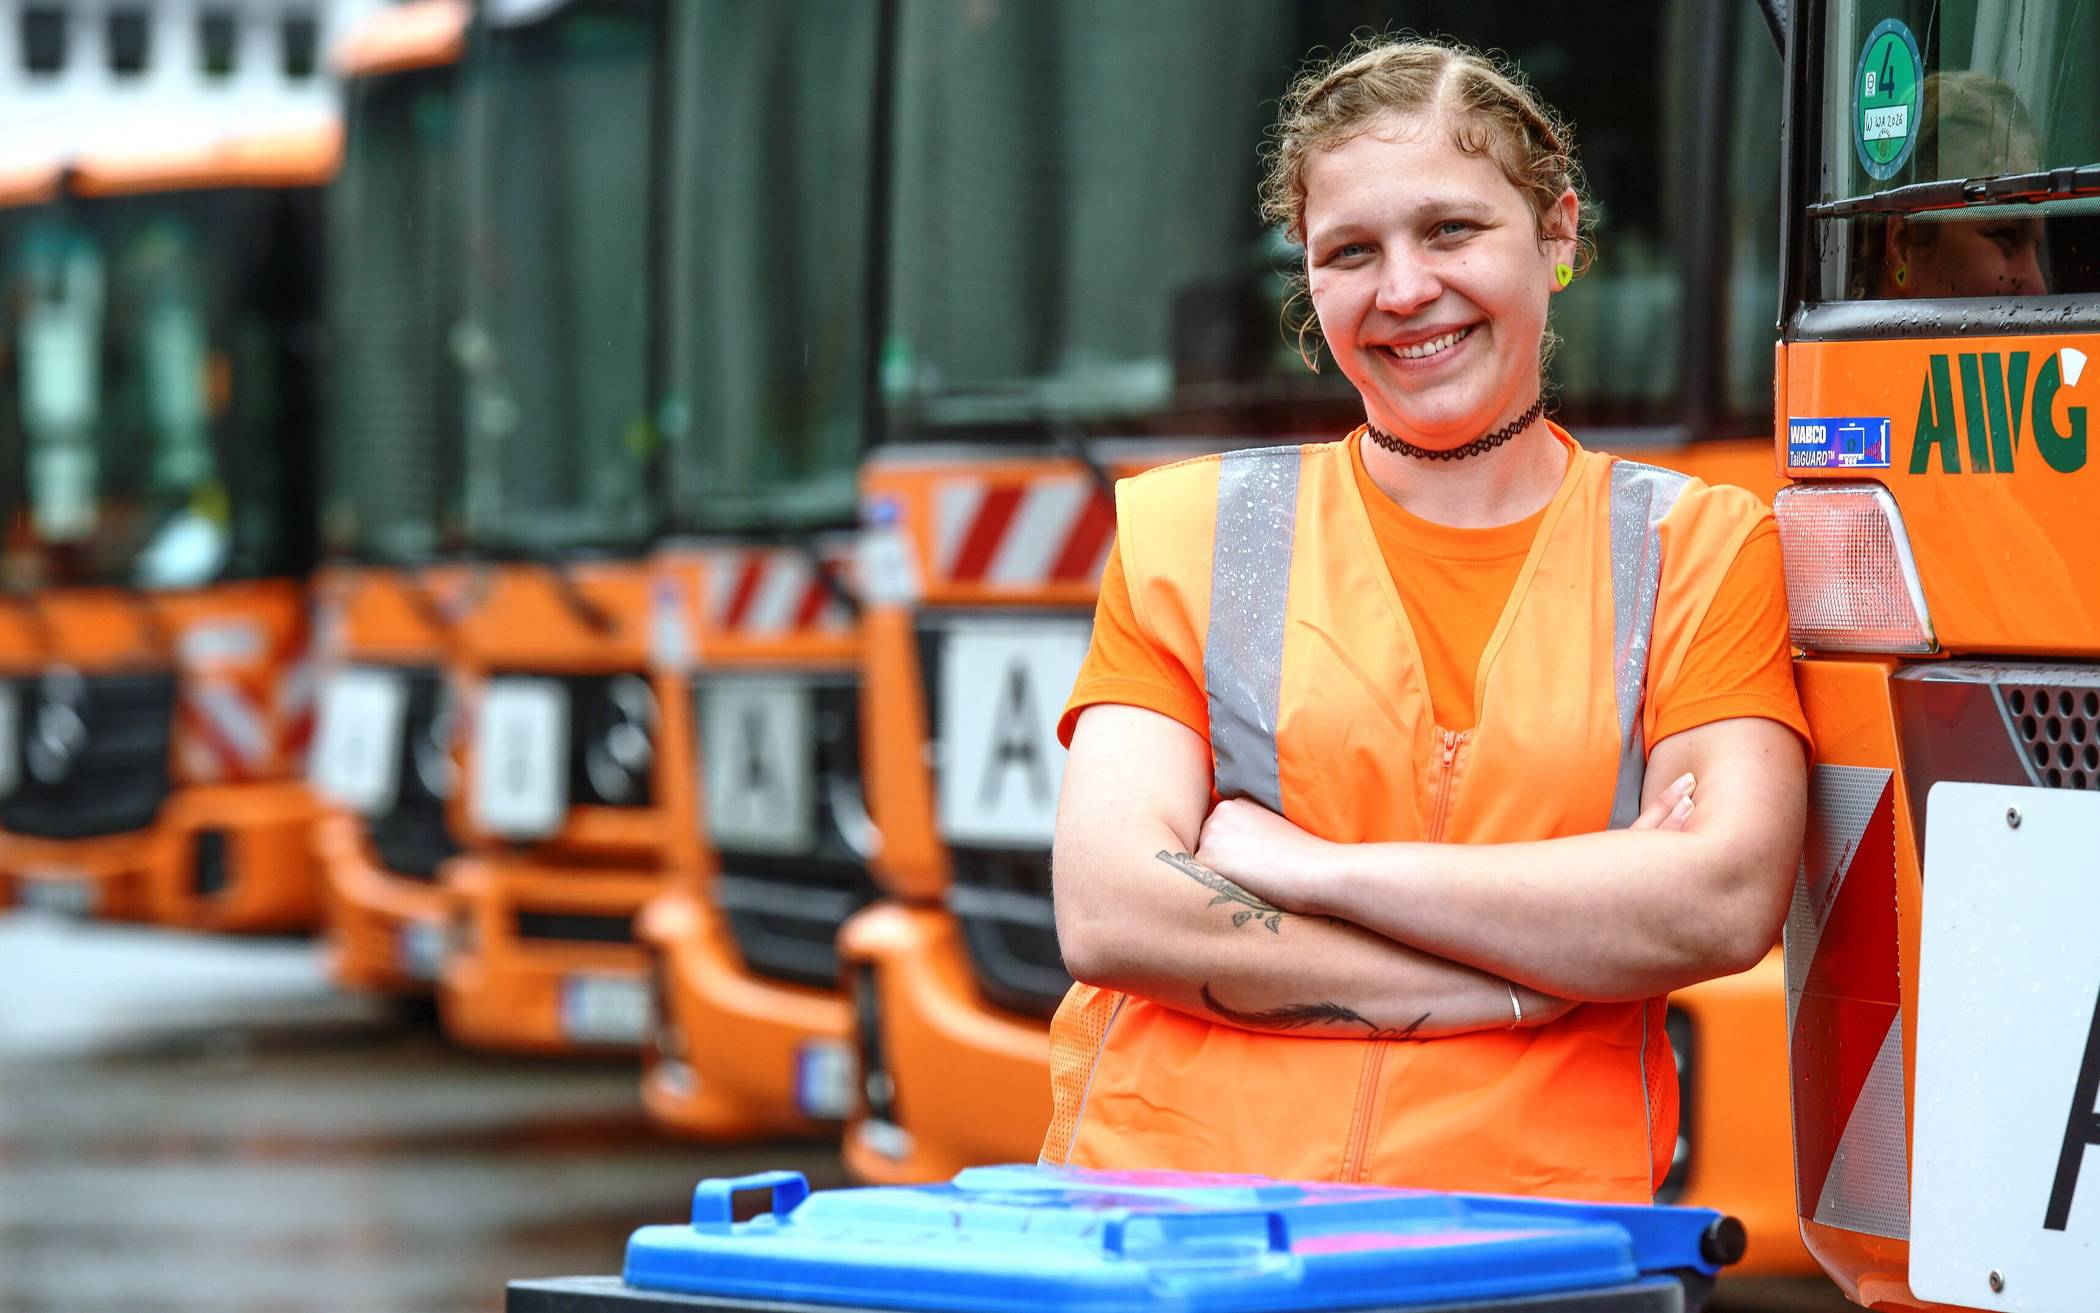  Yvonne Weising, die bei der AWG in Wuppertal als Laderin (Müllwerkerin) und Kraftfahrerin arbeitet, auf dem AWG/ESW-Betriebshof Klingelholl. 